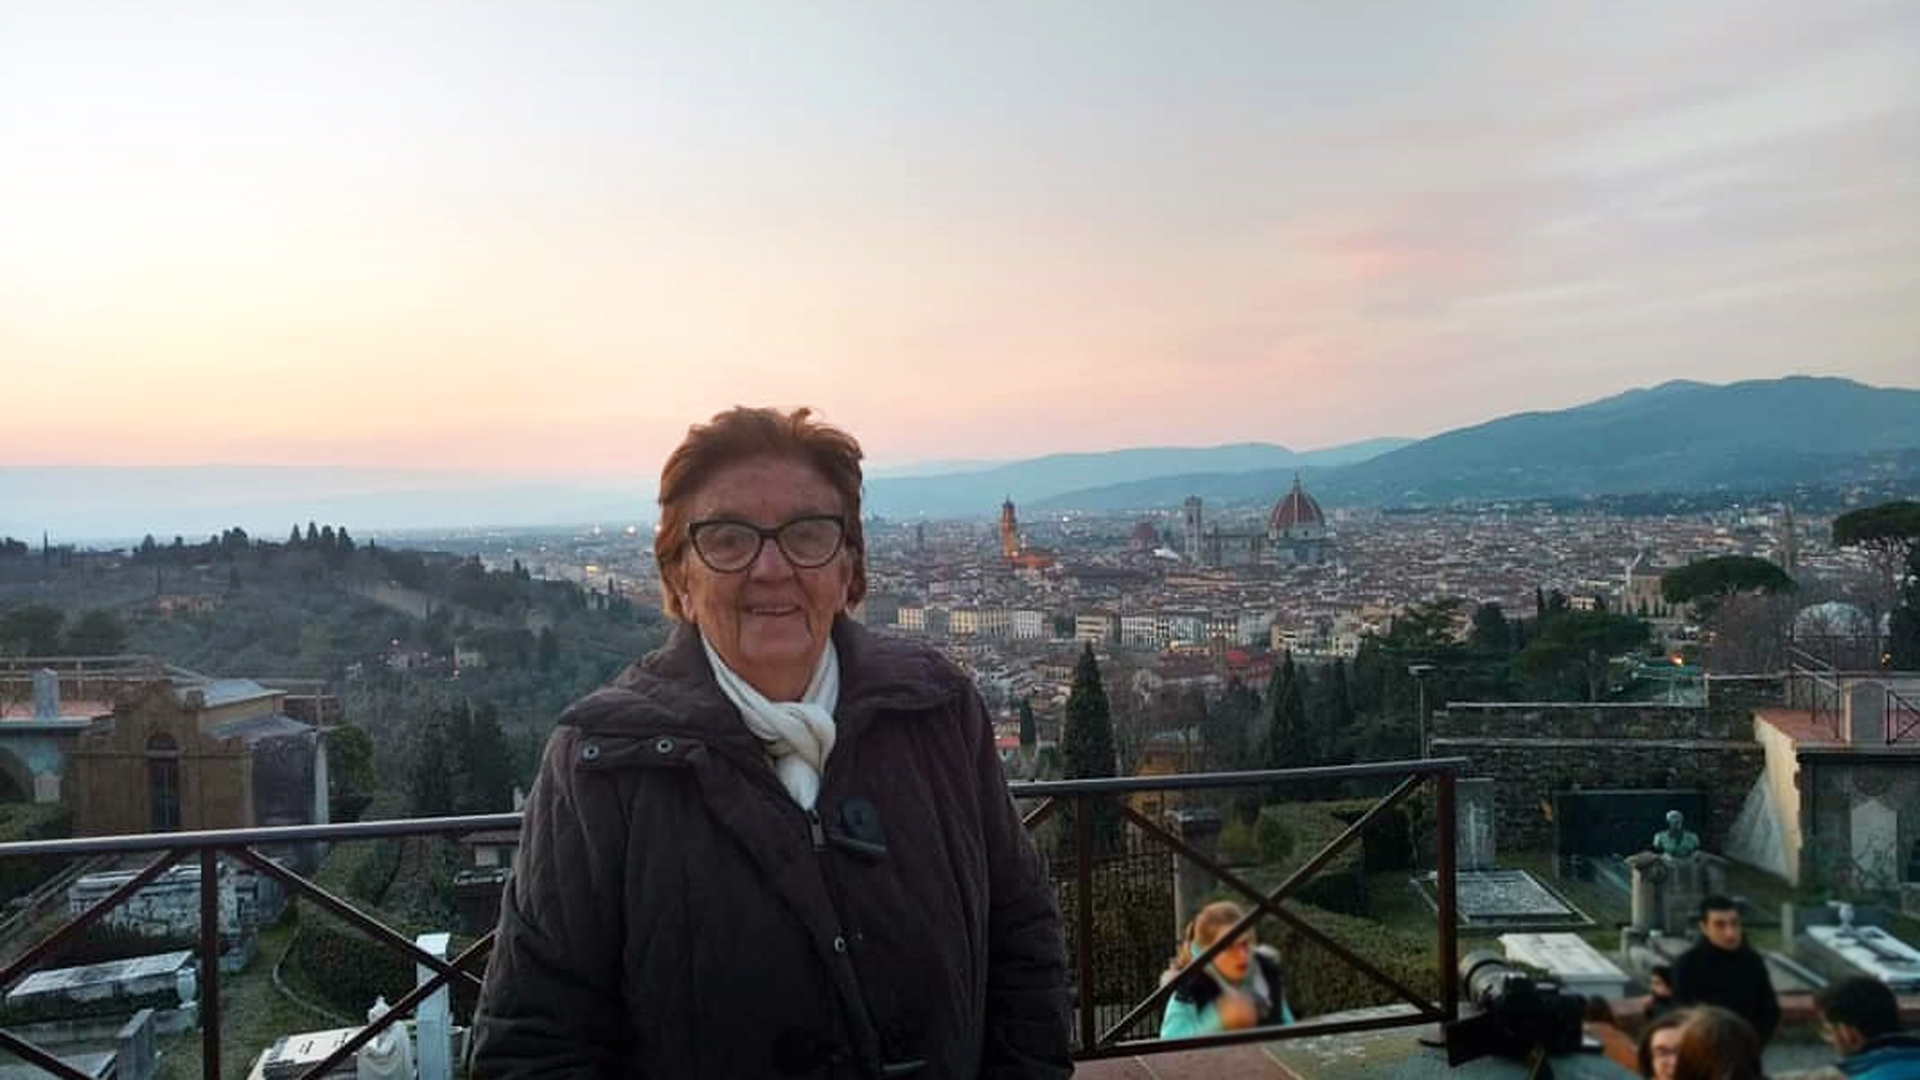 Recorrió Europa sola a los 80 años por medio de un voluntariado: las increíbles aventuras de una abuela viajera